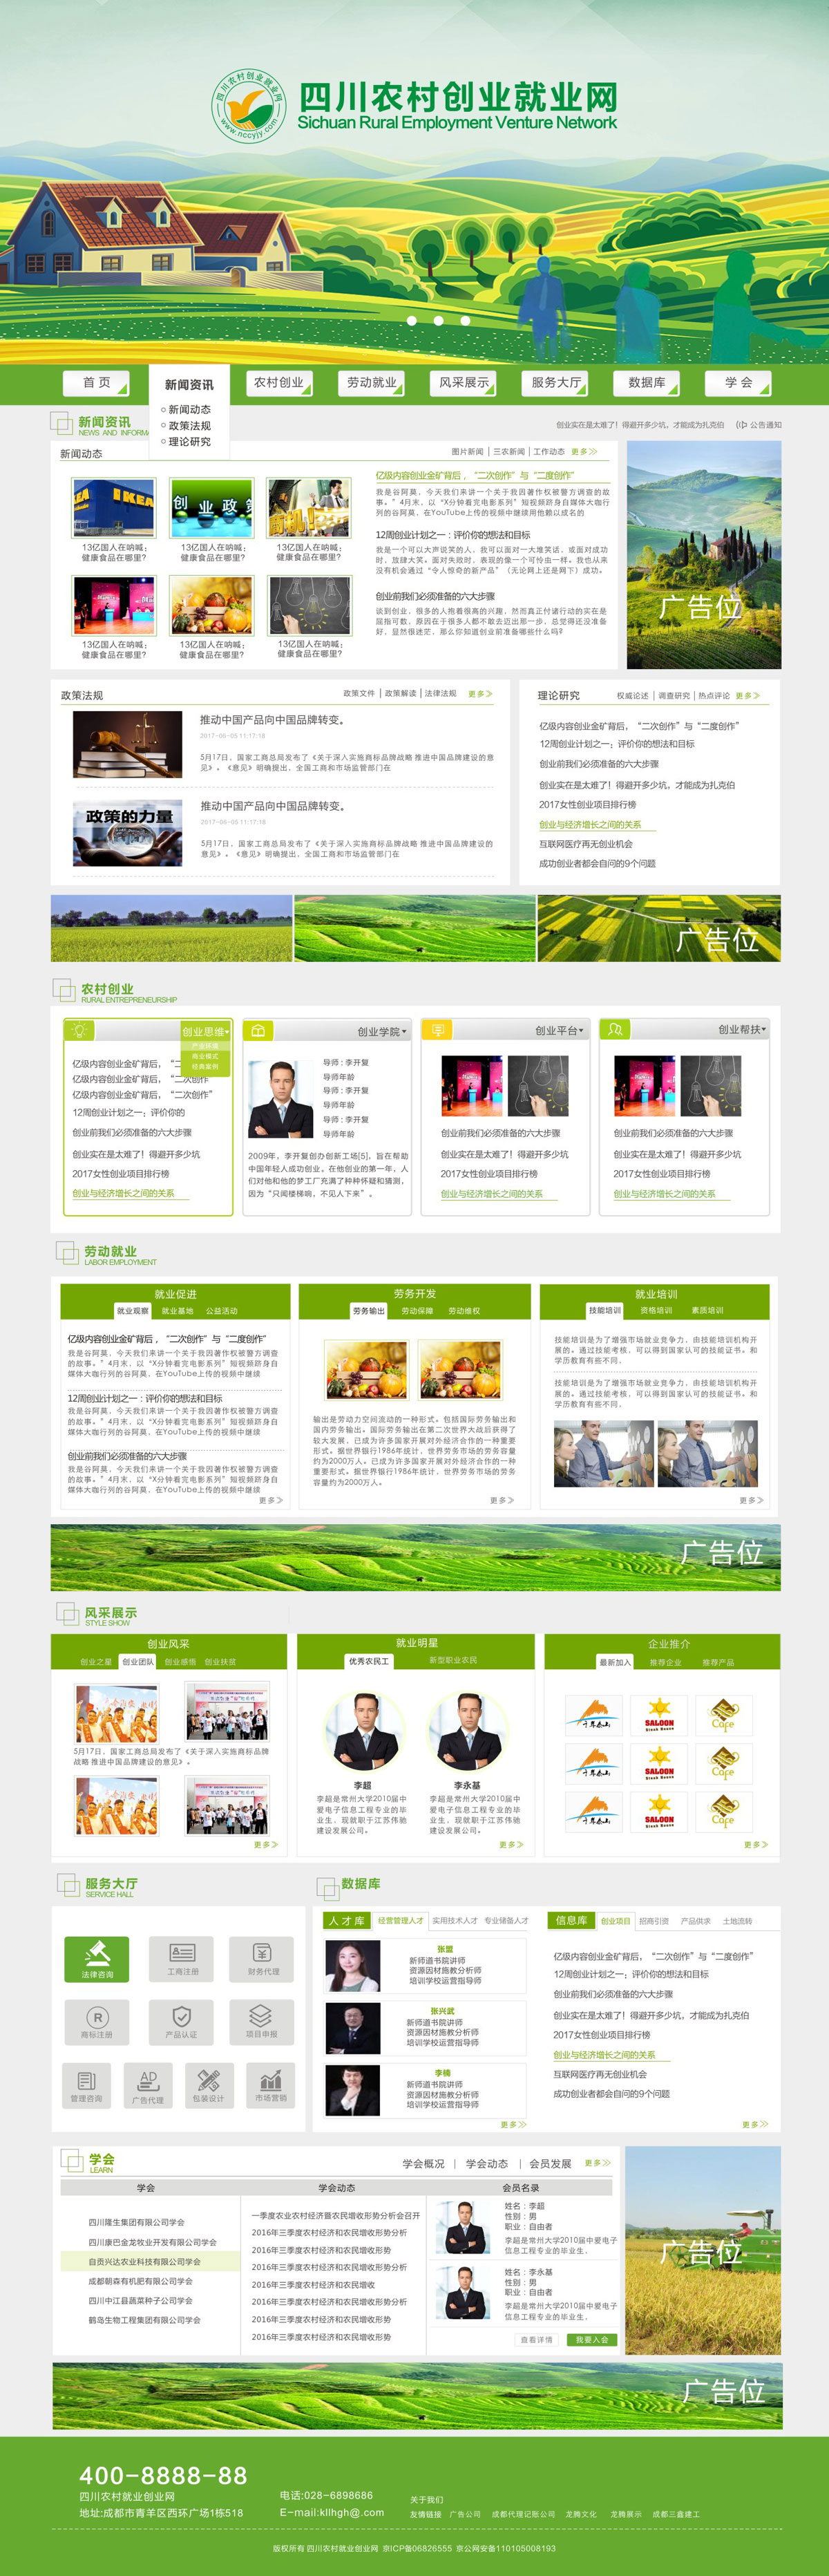 四川农村创业就业网网站设计_农村创业就业网站建设_农业网站设计制作